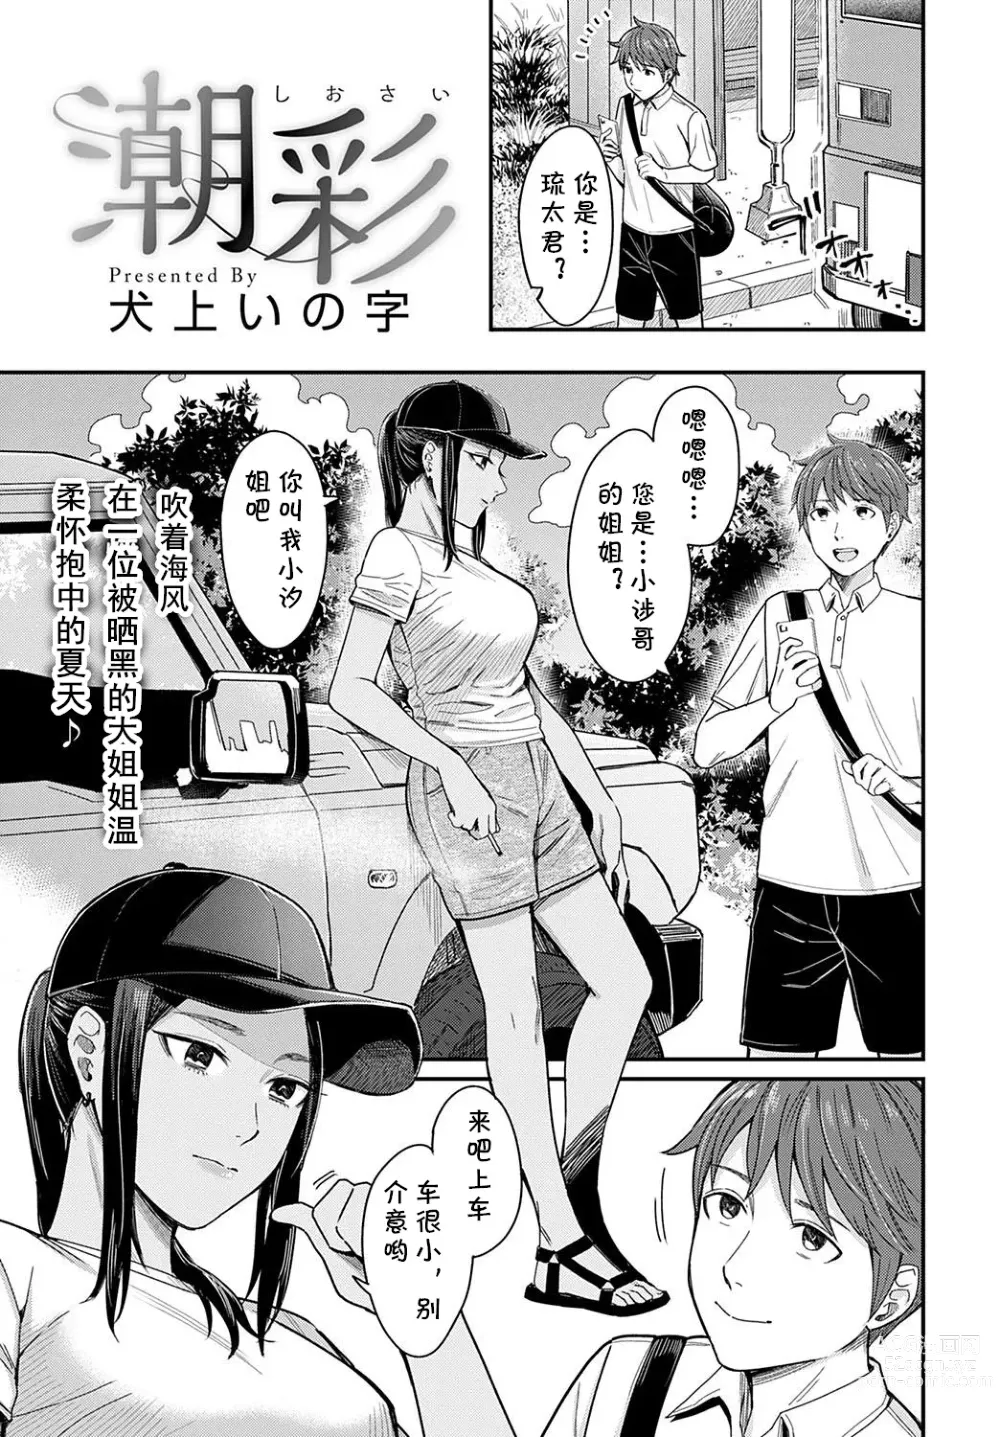 Page 1 of manga Shiosai